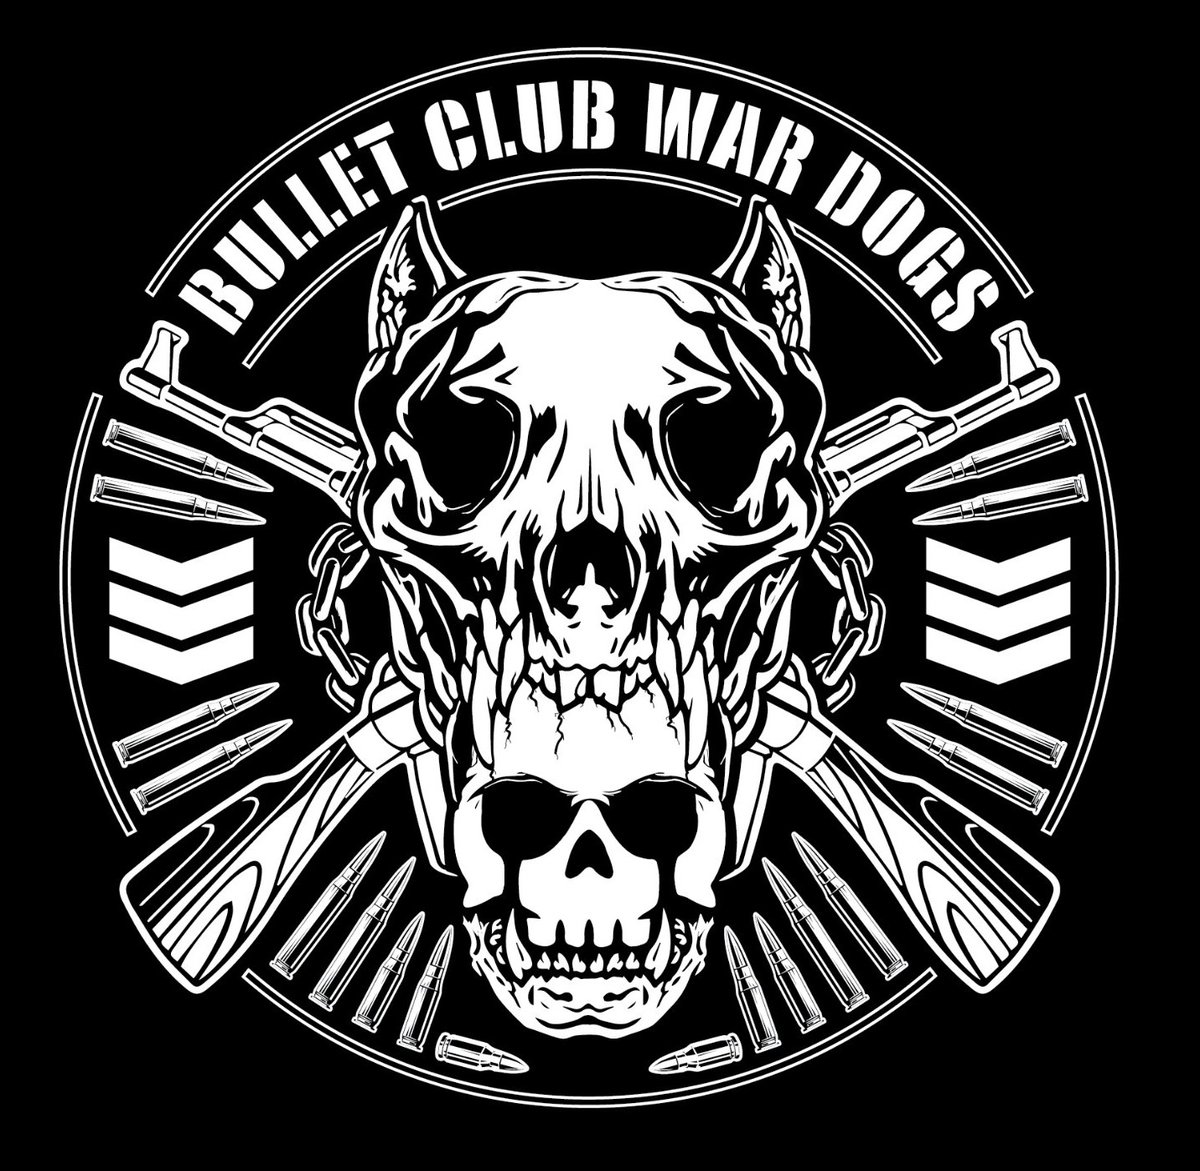 BULLET CLUB WAR DOGS
デビッド・フィンレー → IWGP GLOBALヘビー級チャンピオン
ゲイブ・キッド → STRONG無差別級チャンピオン🆕
クラーク・コナーズ → IWGPジュニアタッグチャンピオン
ドリラ・モロニー → IWGPジュニアタッグチャンピオン
#MD4R
#njpw